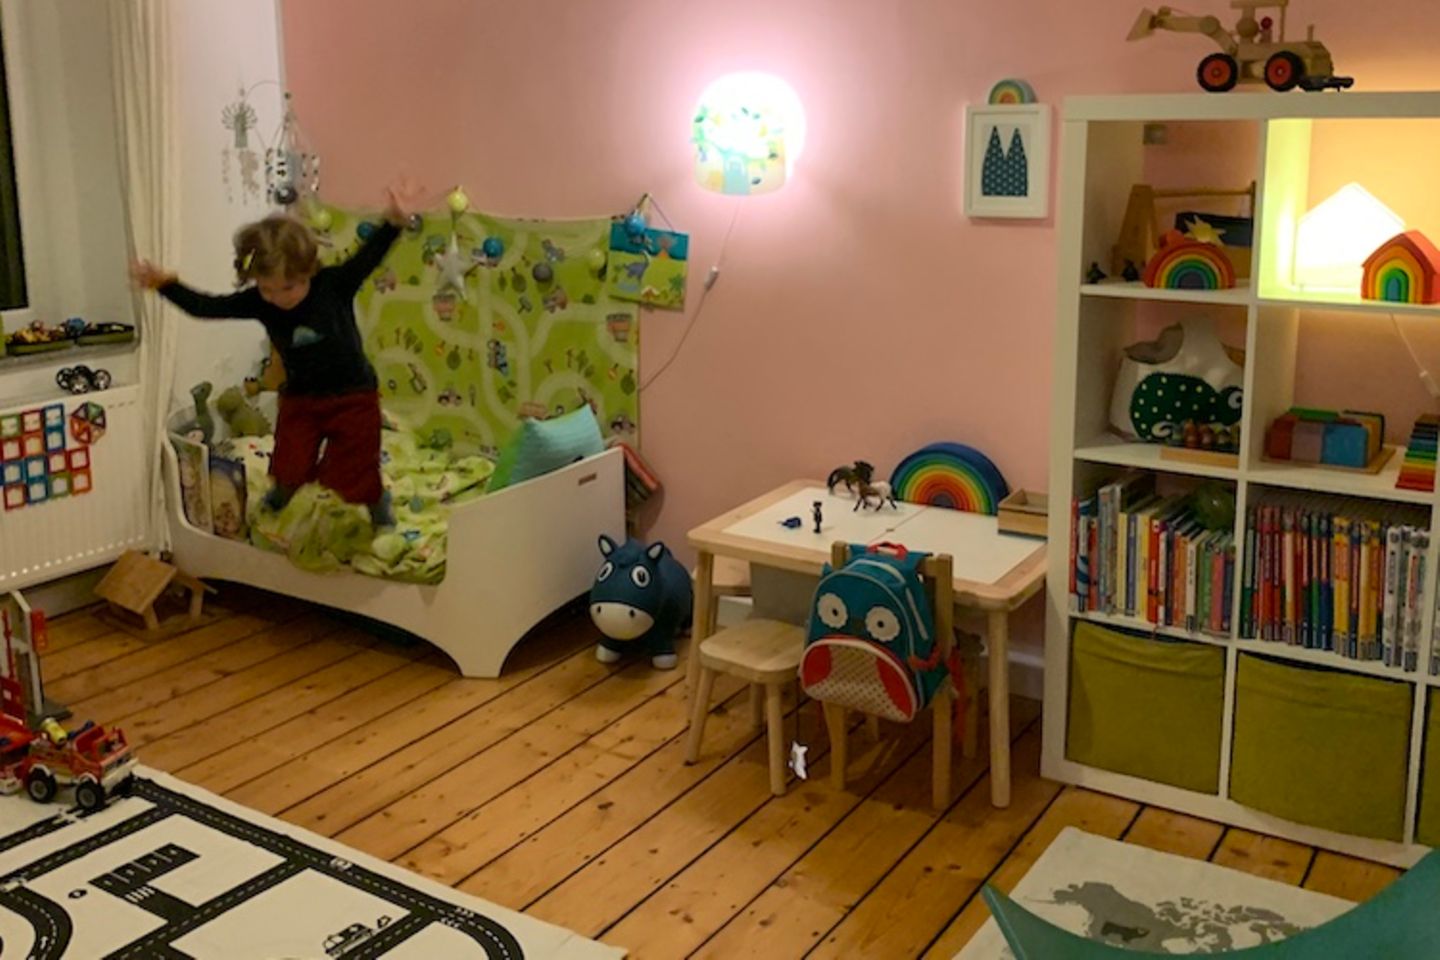 BloggerMumof3Boys: Ein rosa Jungstraum für den Kleinen - das neue Kinderzimmer